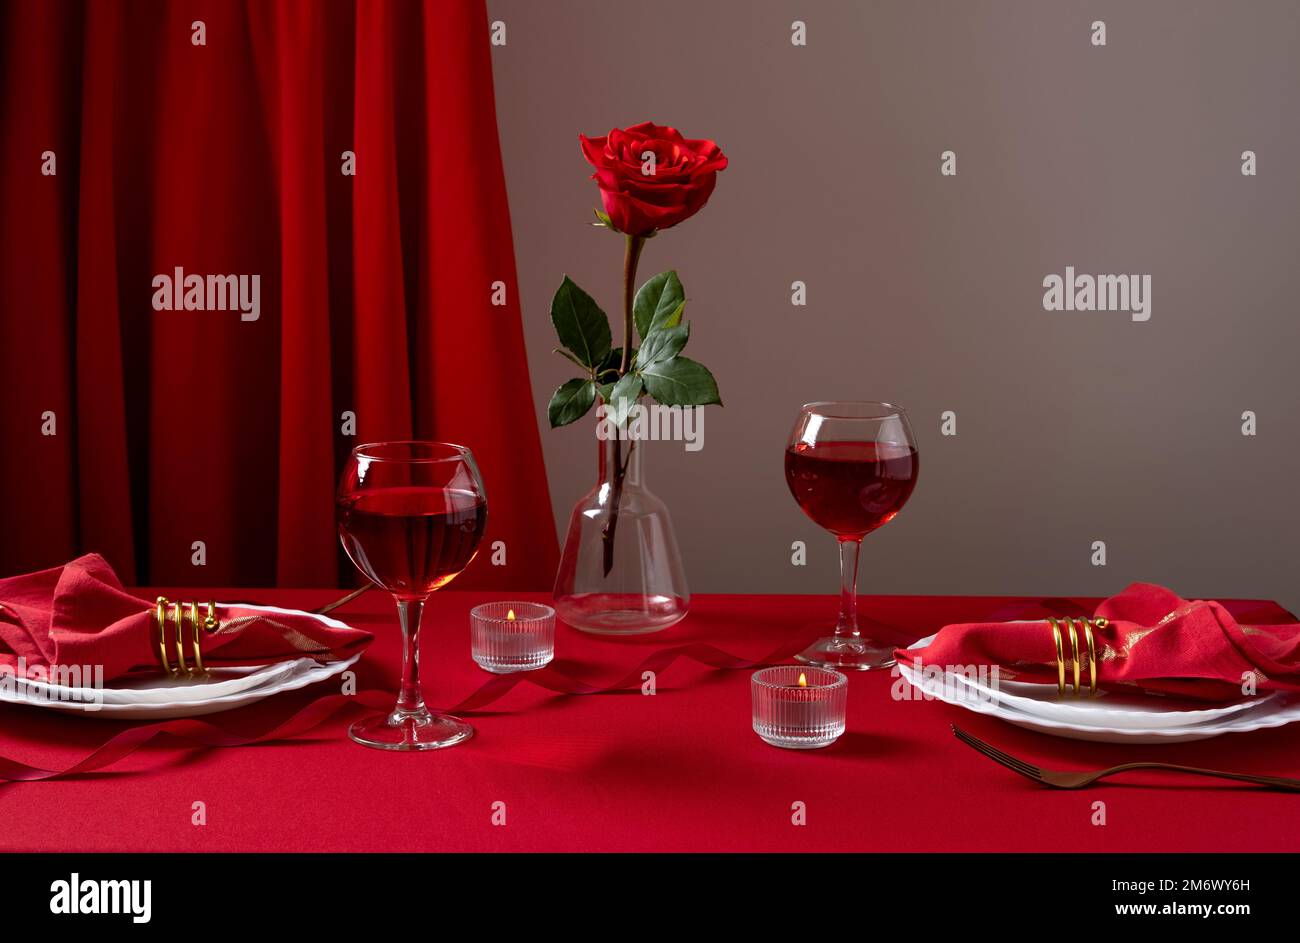 Table romantique avec vaisselle blanche et serviettes rouges, vin et bougies. Concept Saint Valentin ou dîner romantique. Romain Banque D'Images